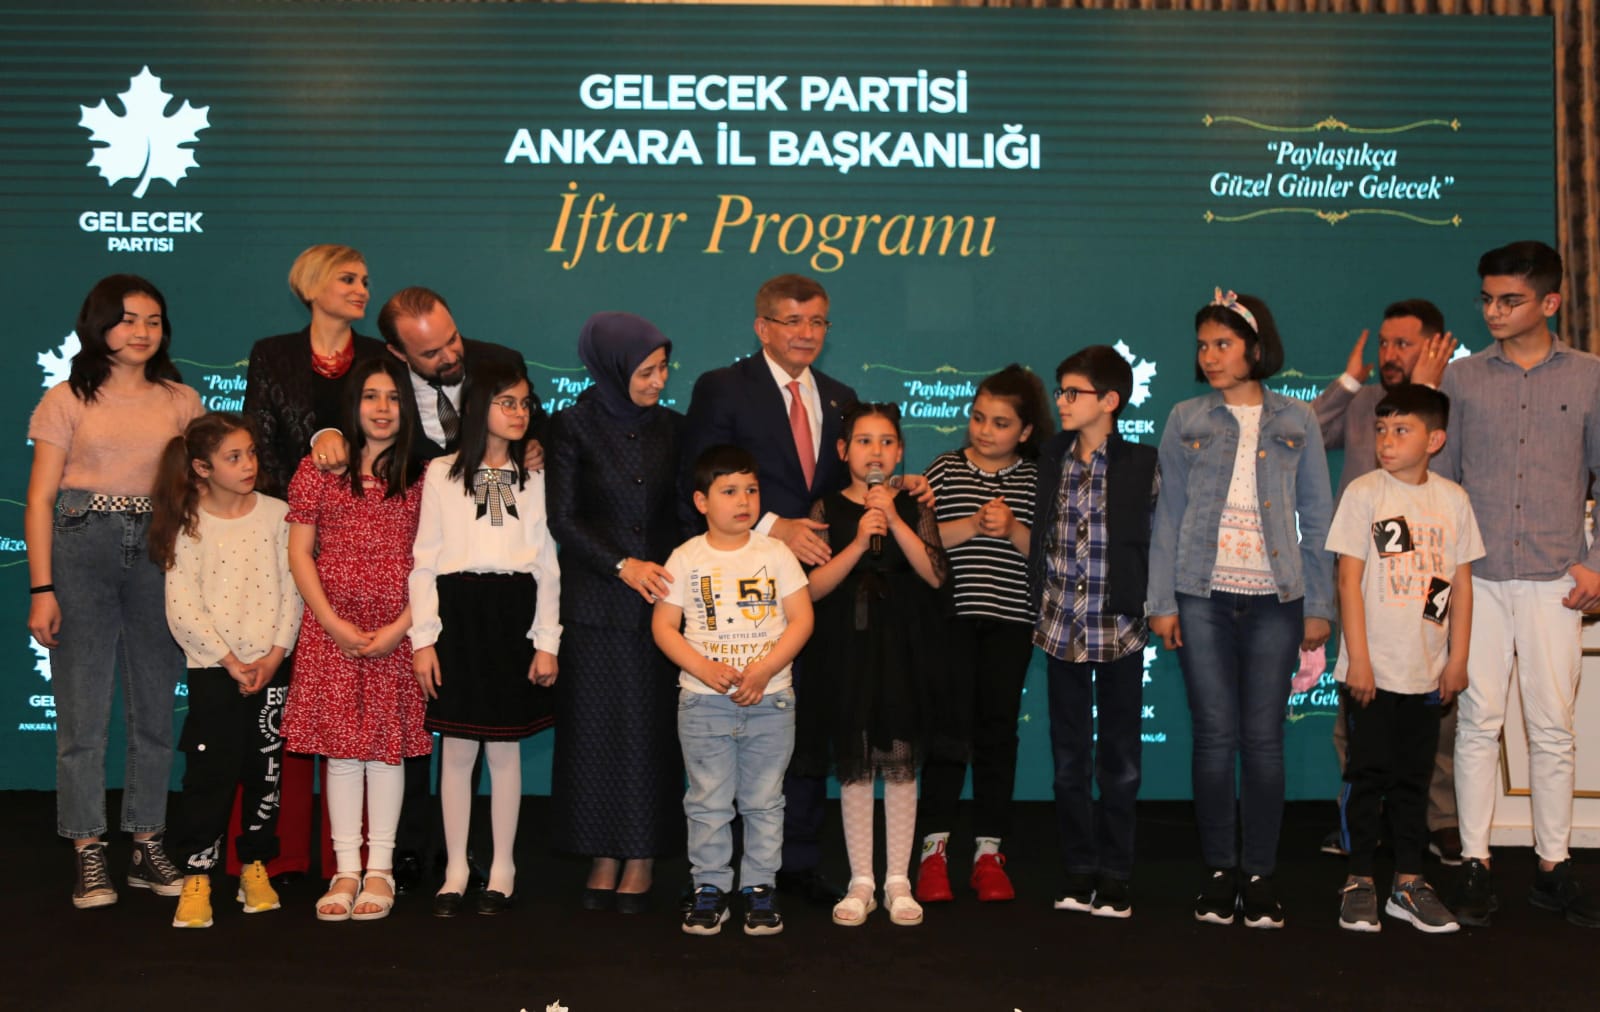 Ankara İl Başkanlığı İftar Programı